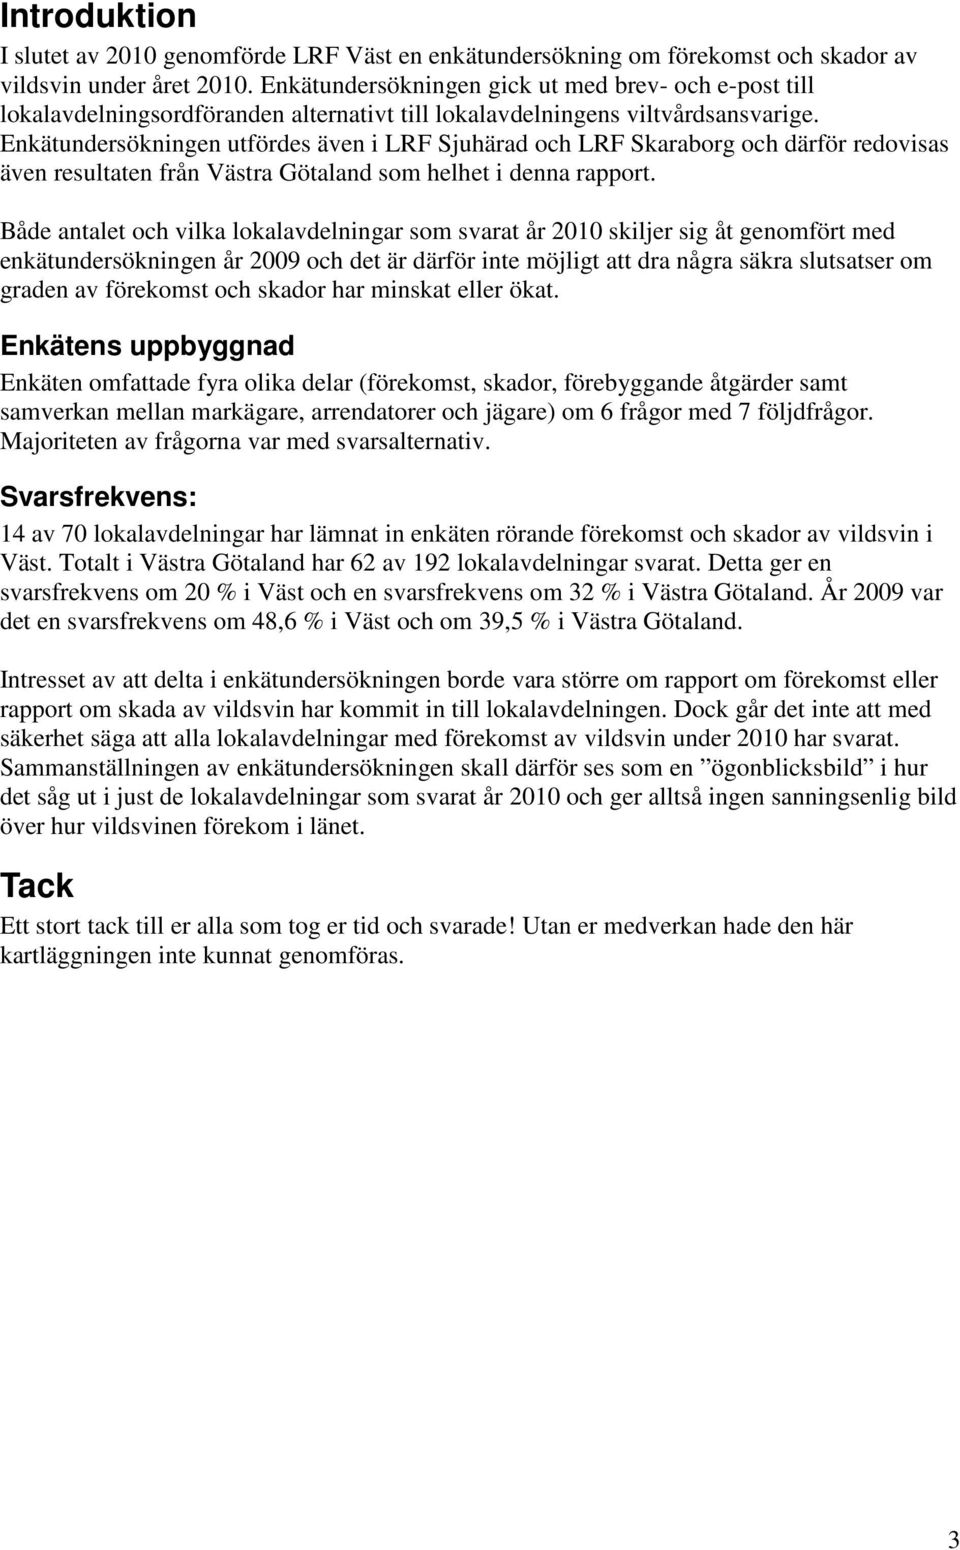 Enkätundersökningen utfördes även i LRF Sjuhärad och LRF Skaraborg och därför redovisas även resultaten från Västra Götaland som helhet i denna rapport.